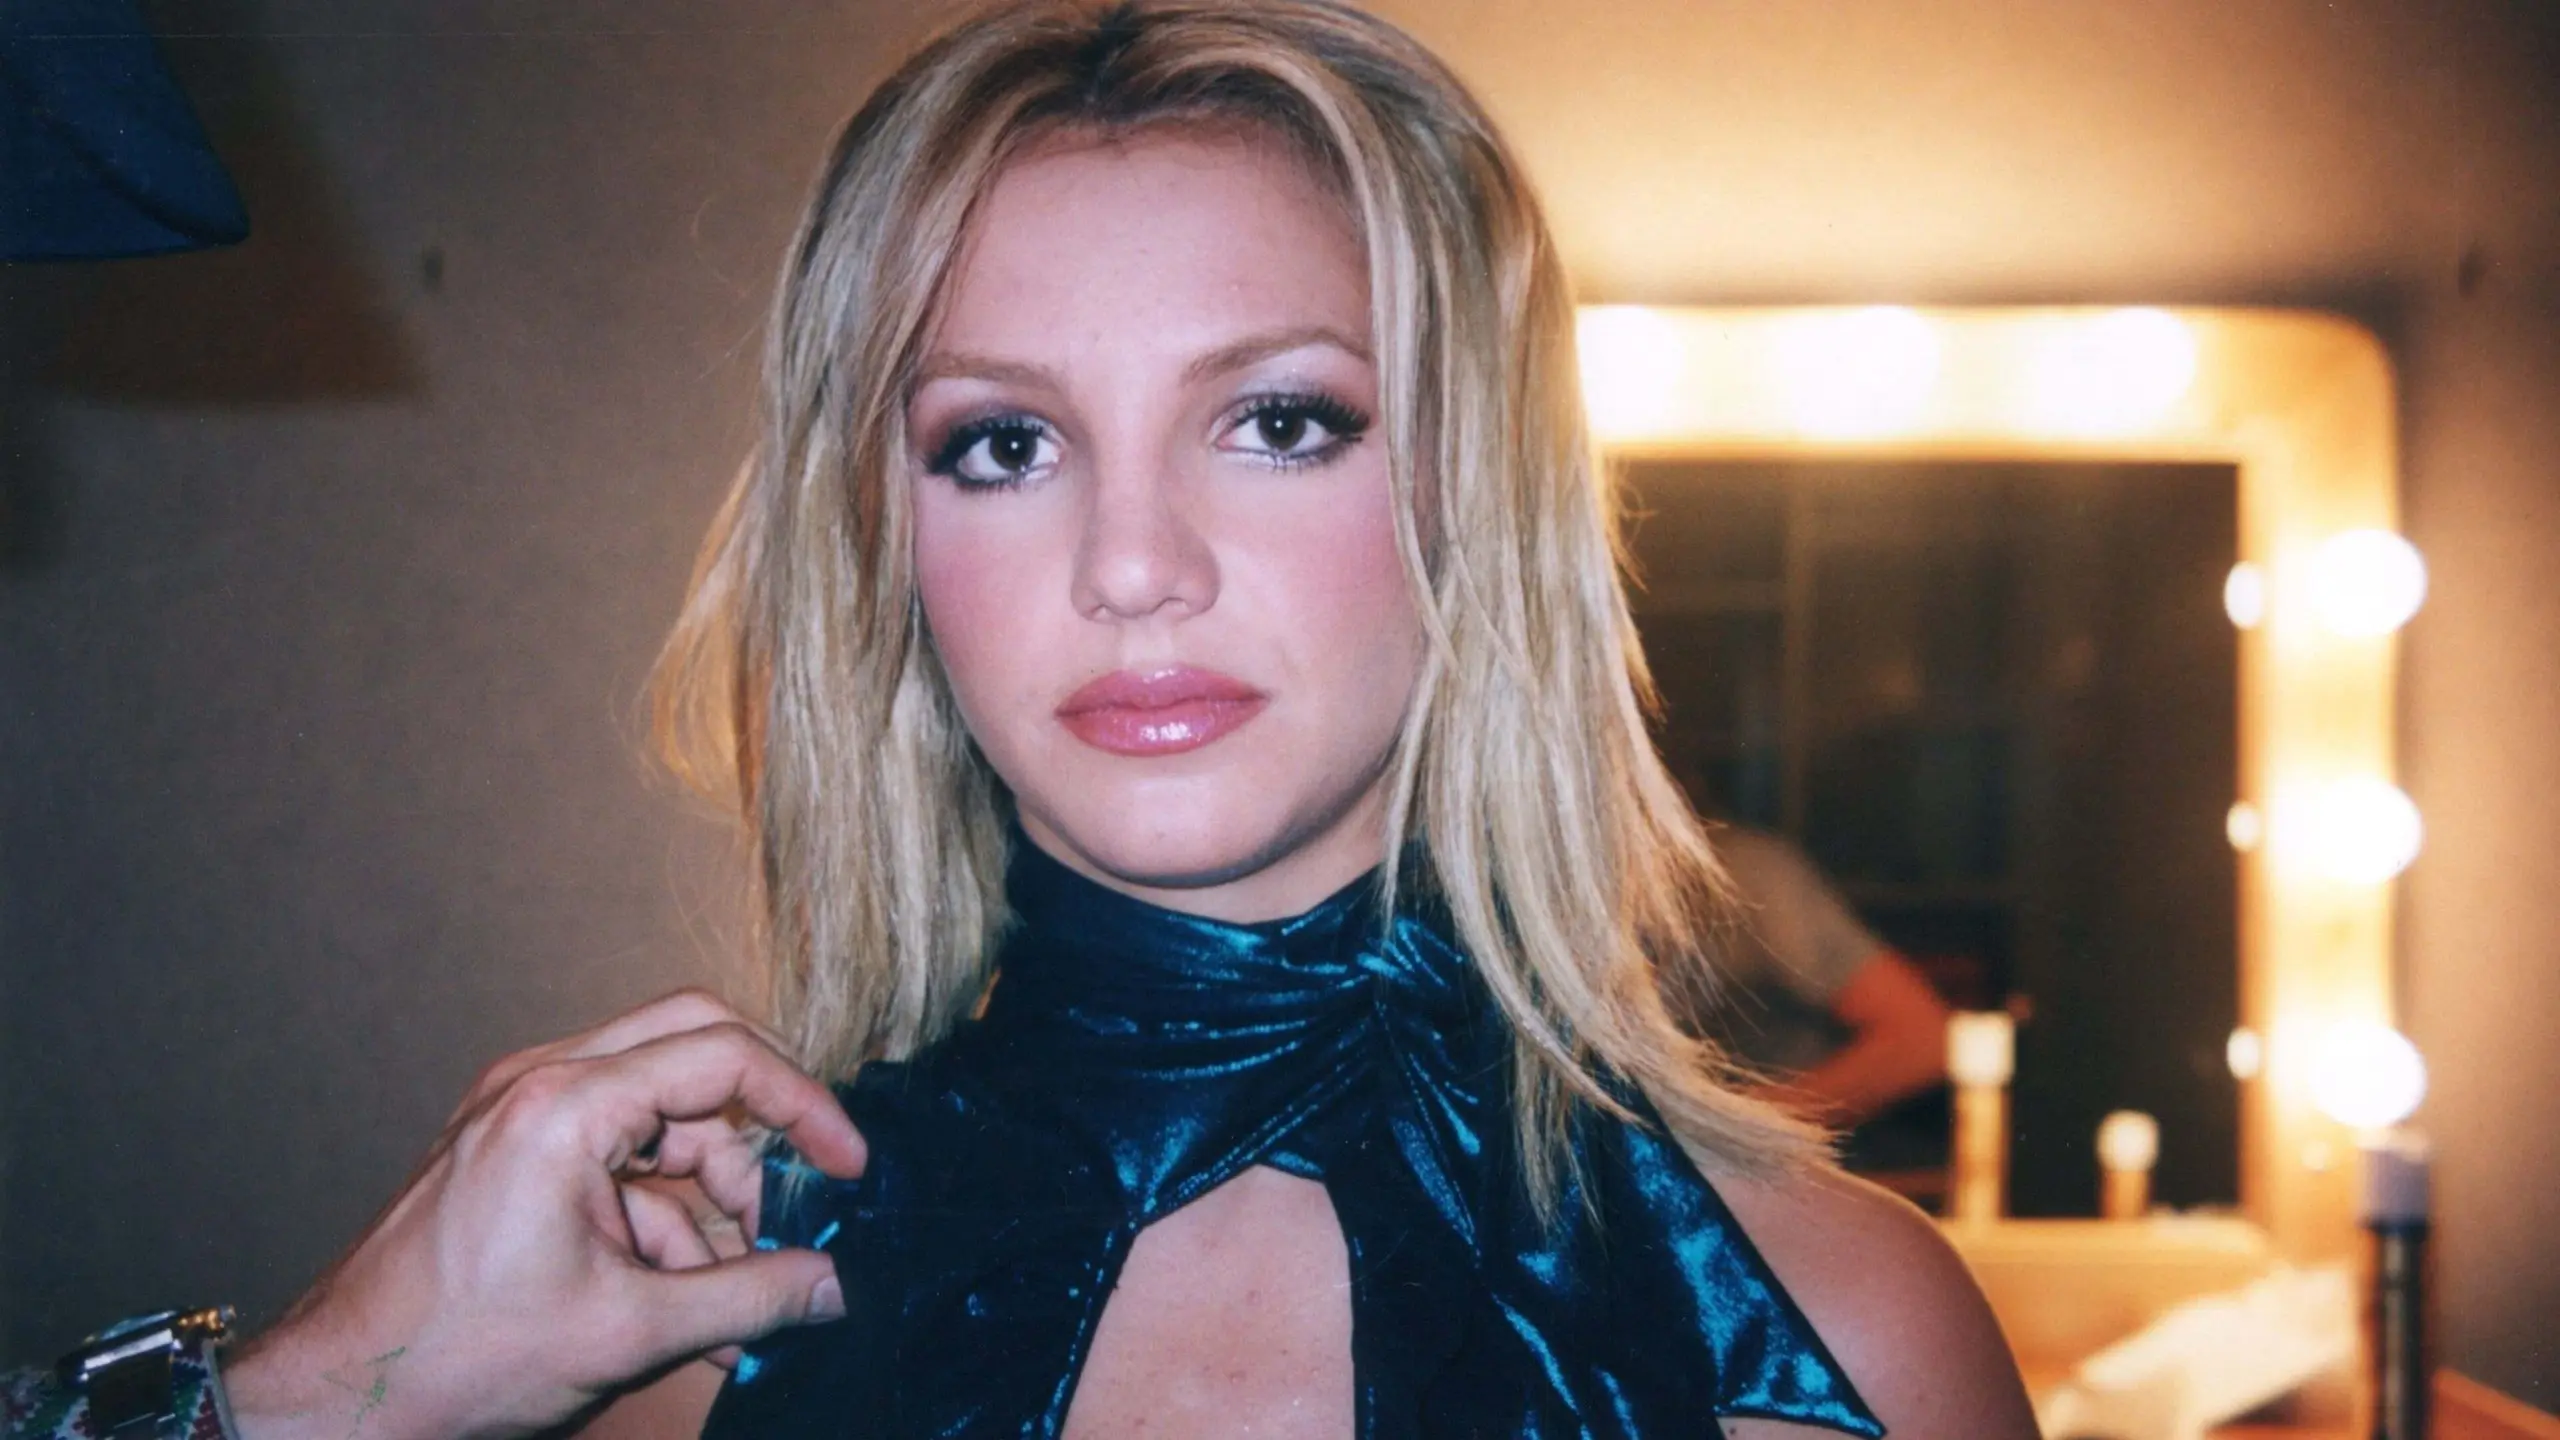 Framing Britney Spears - Die Geschichte hinter #freebritney